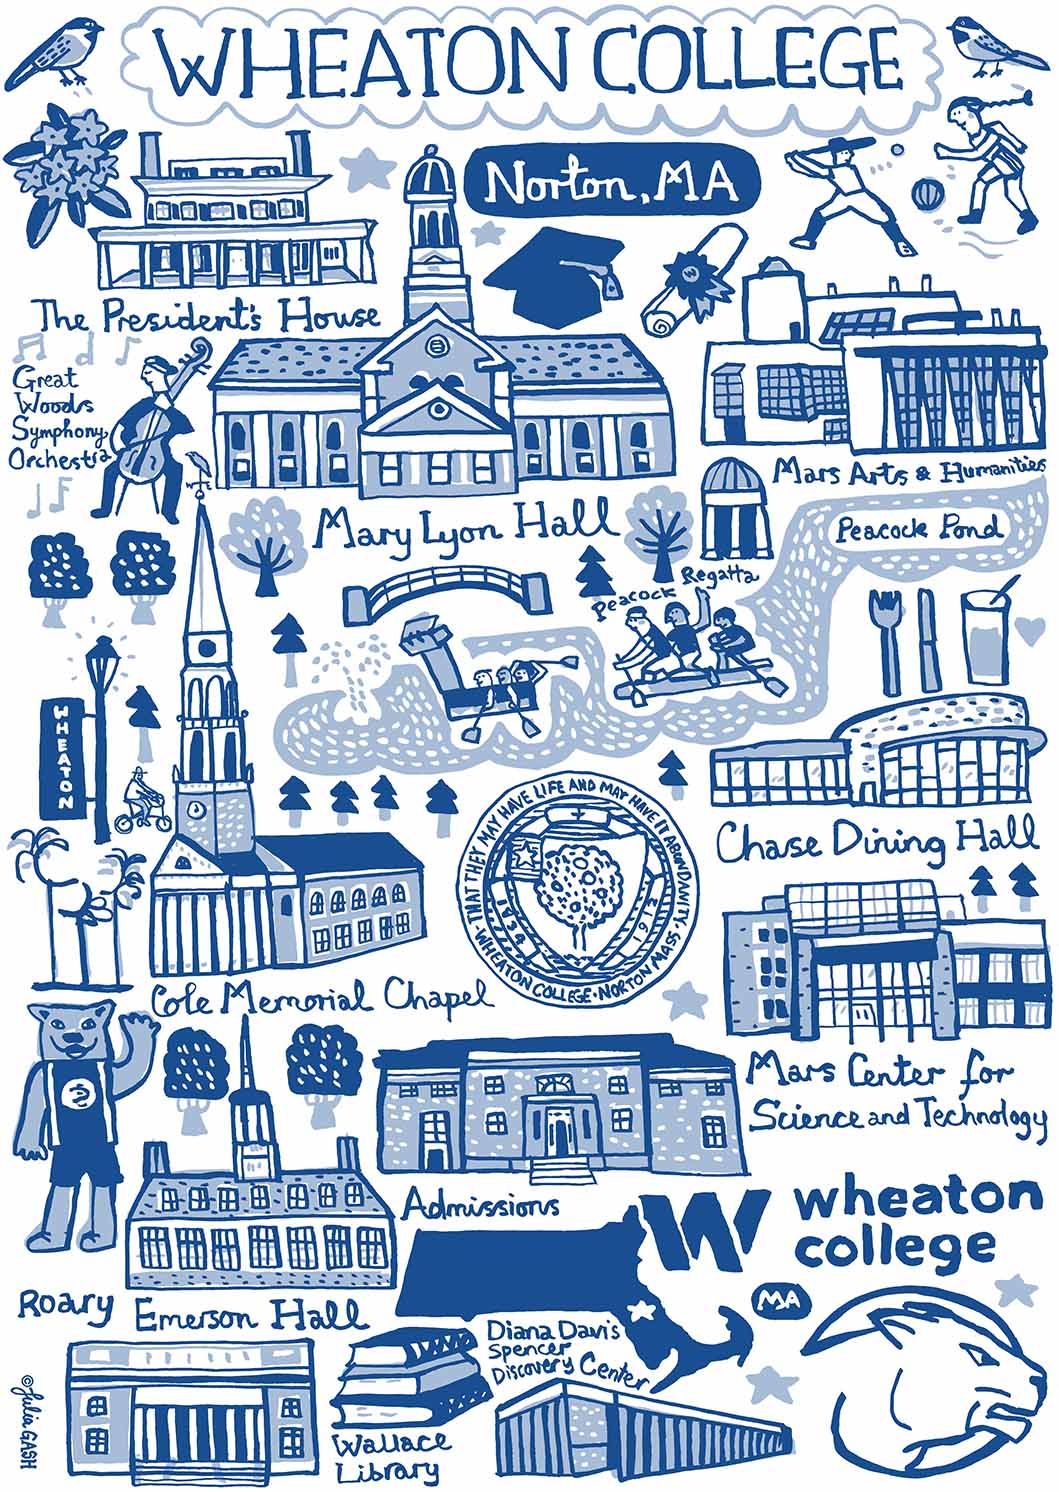 Wheaton College Design by Julia Gash